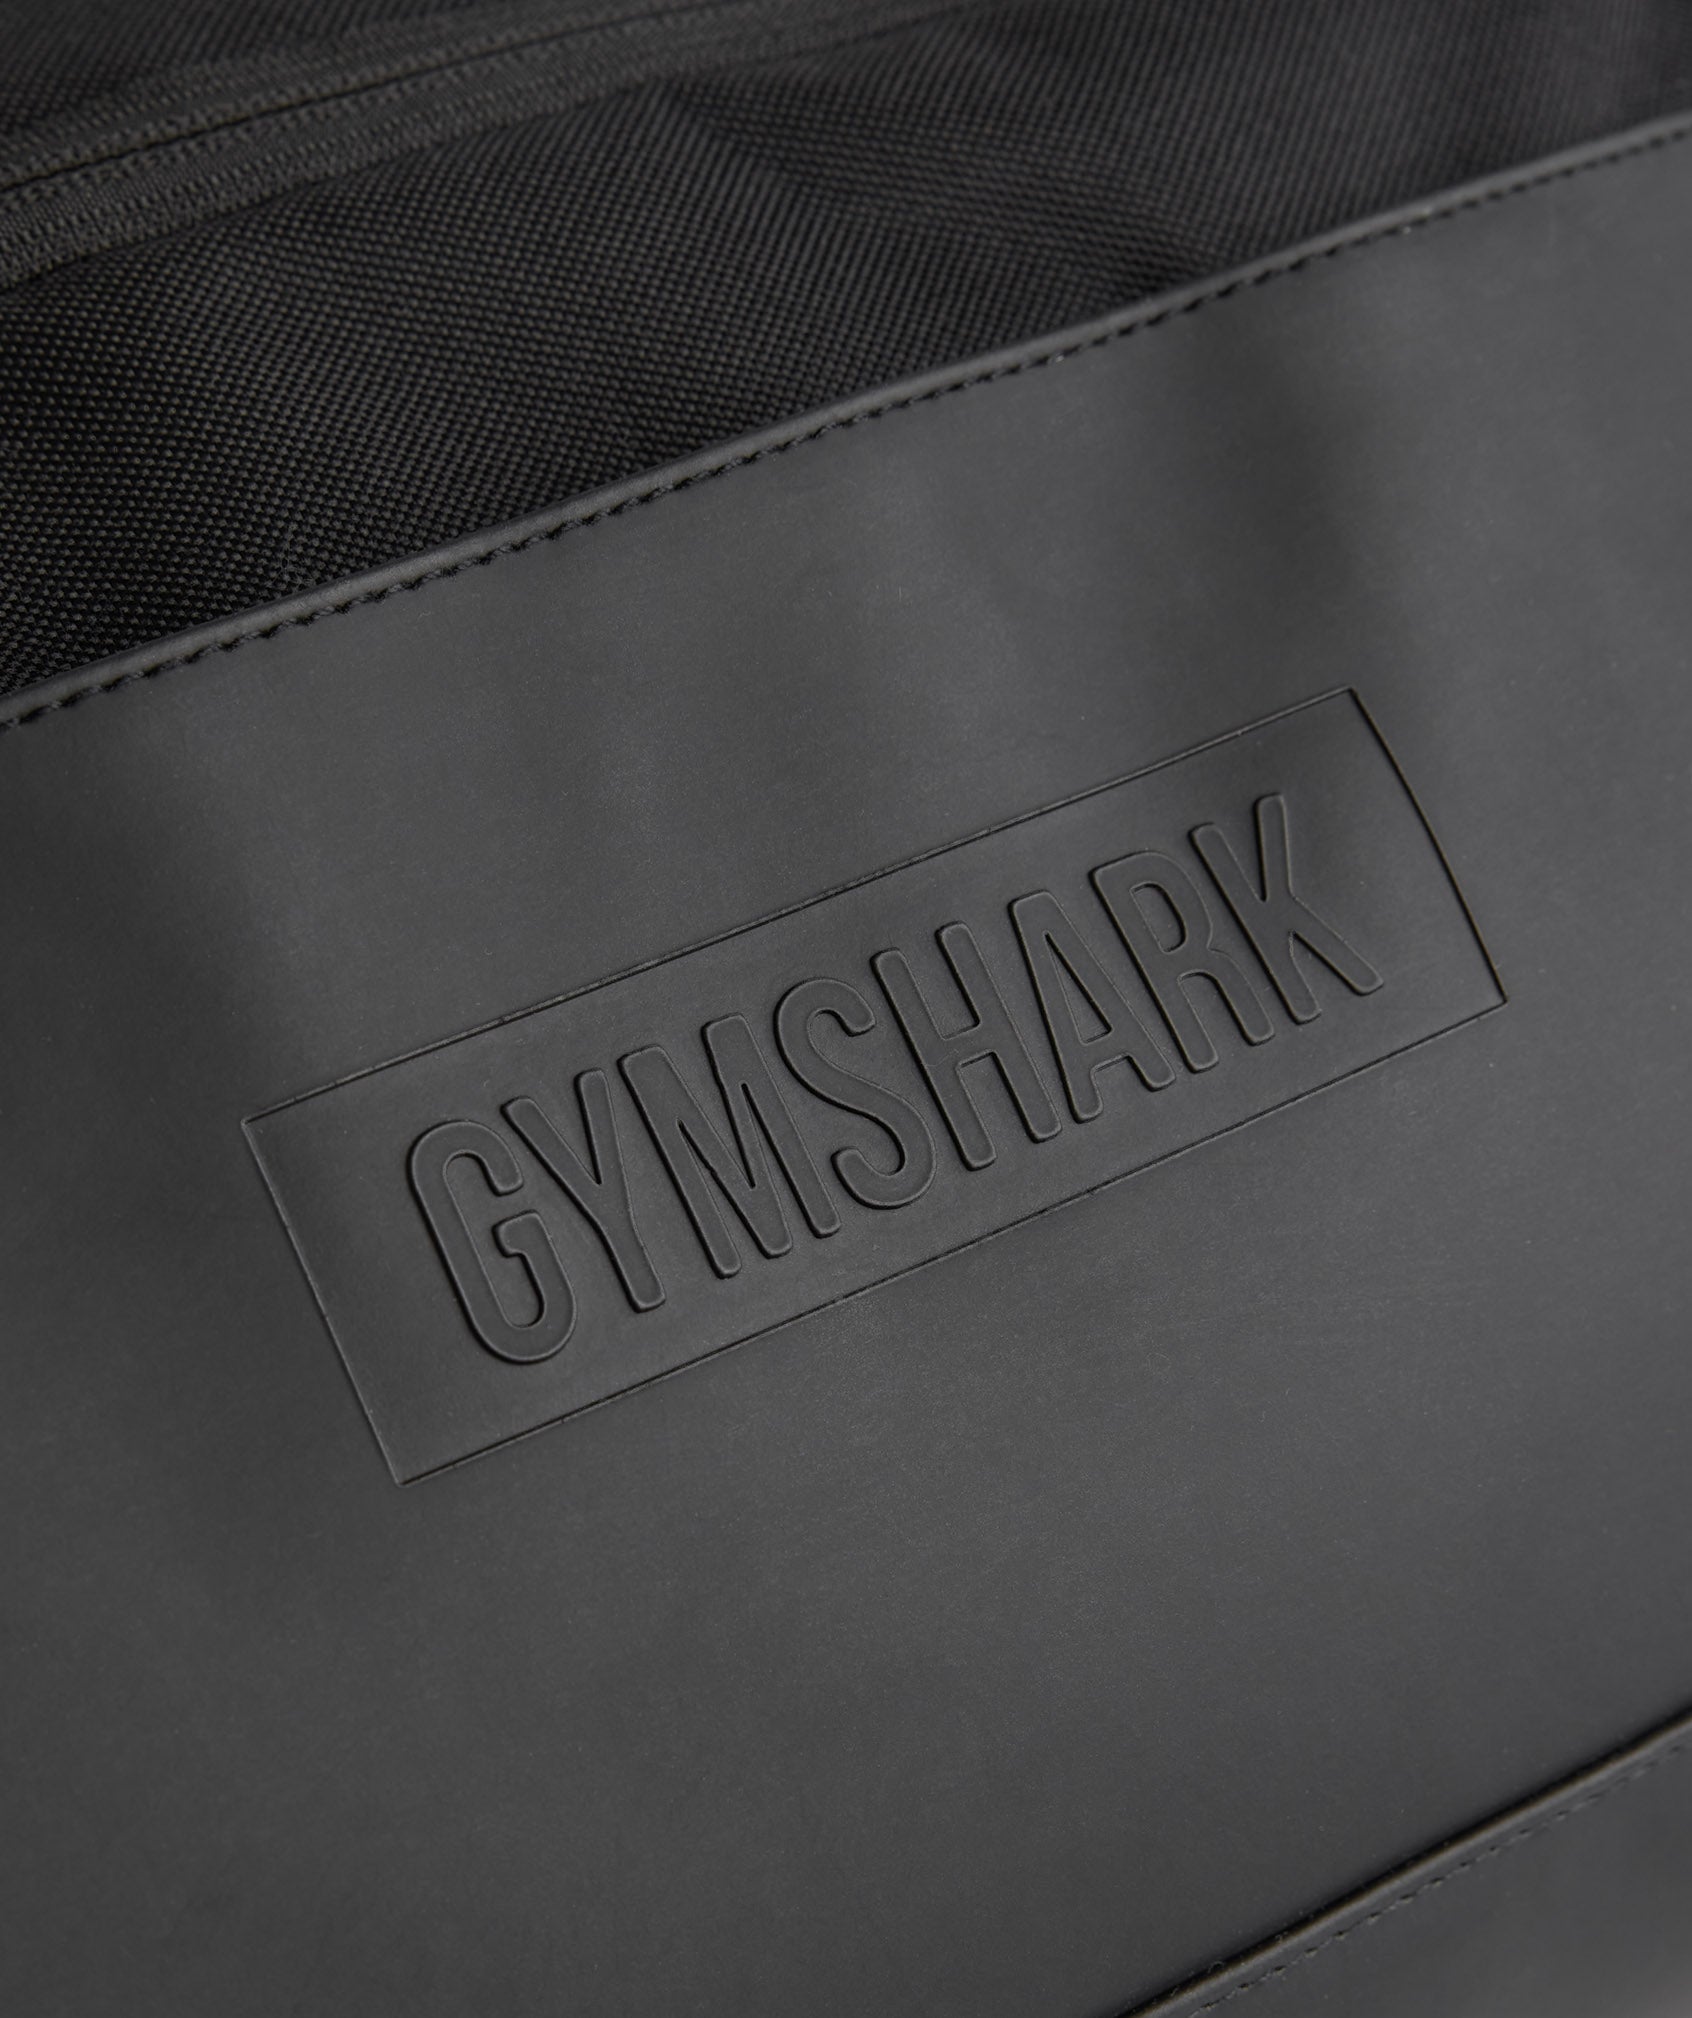 Gymshark Medium Everyday Gym Bag - Black